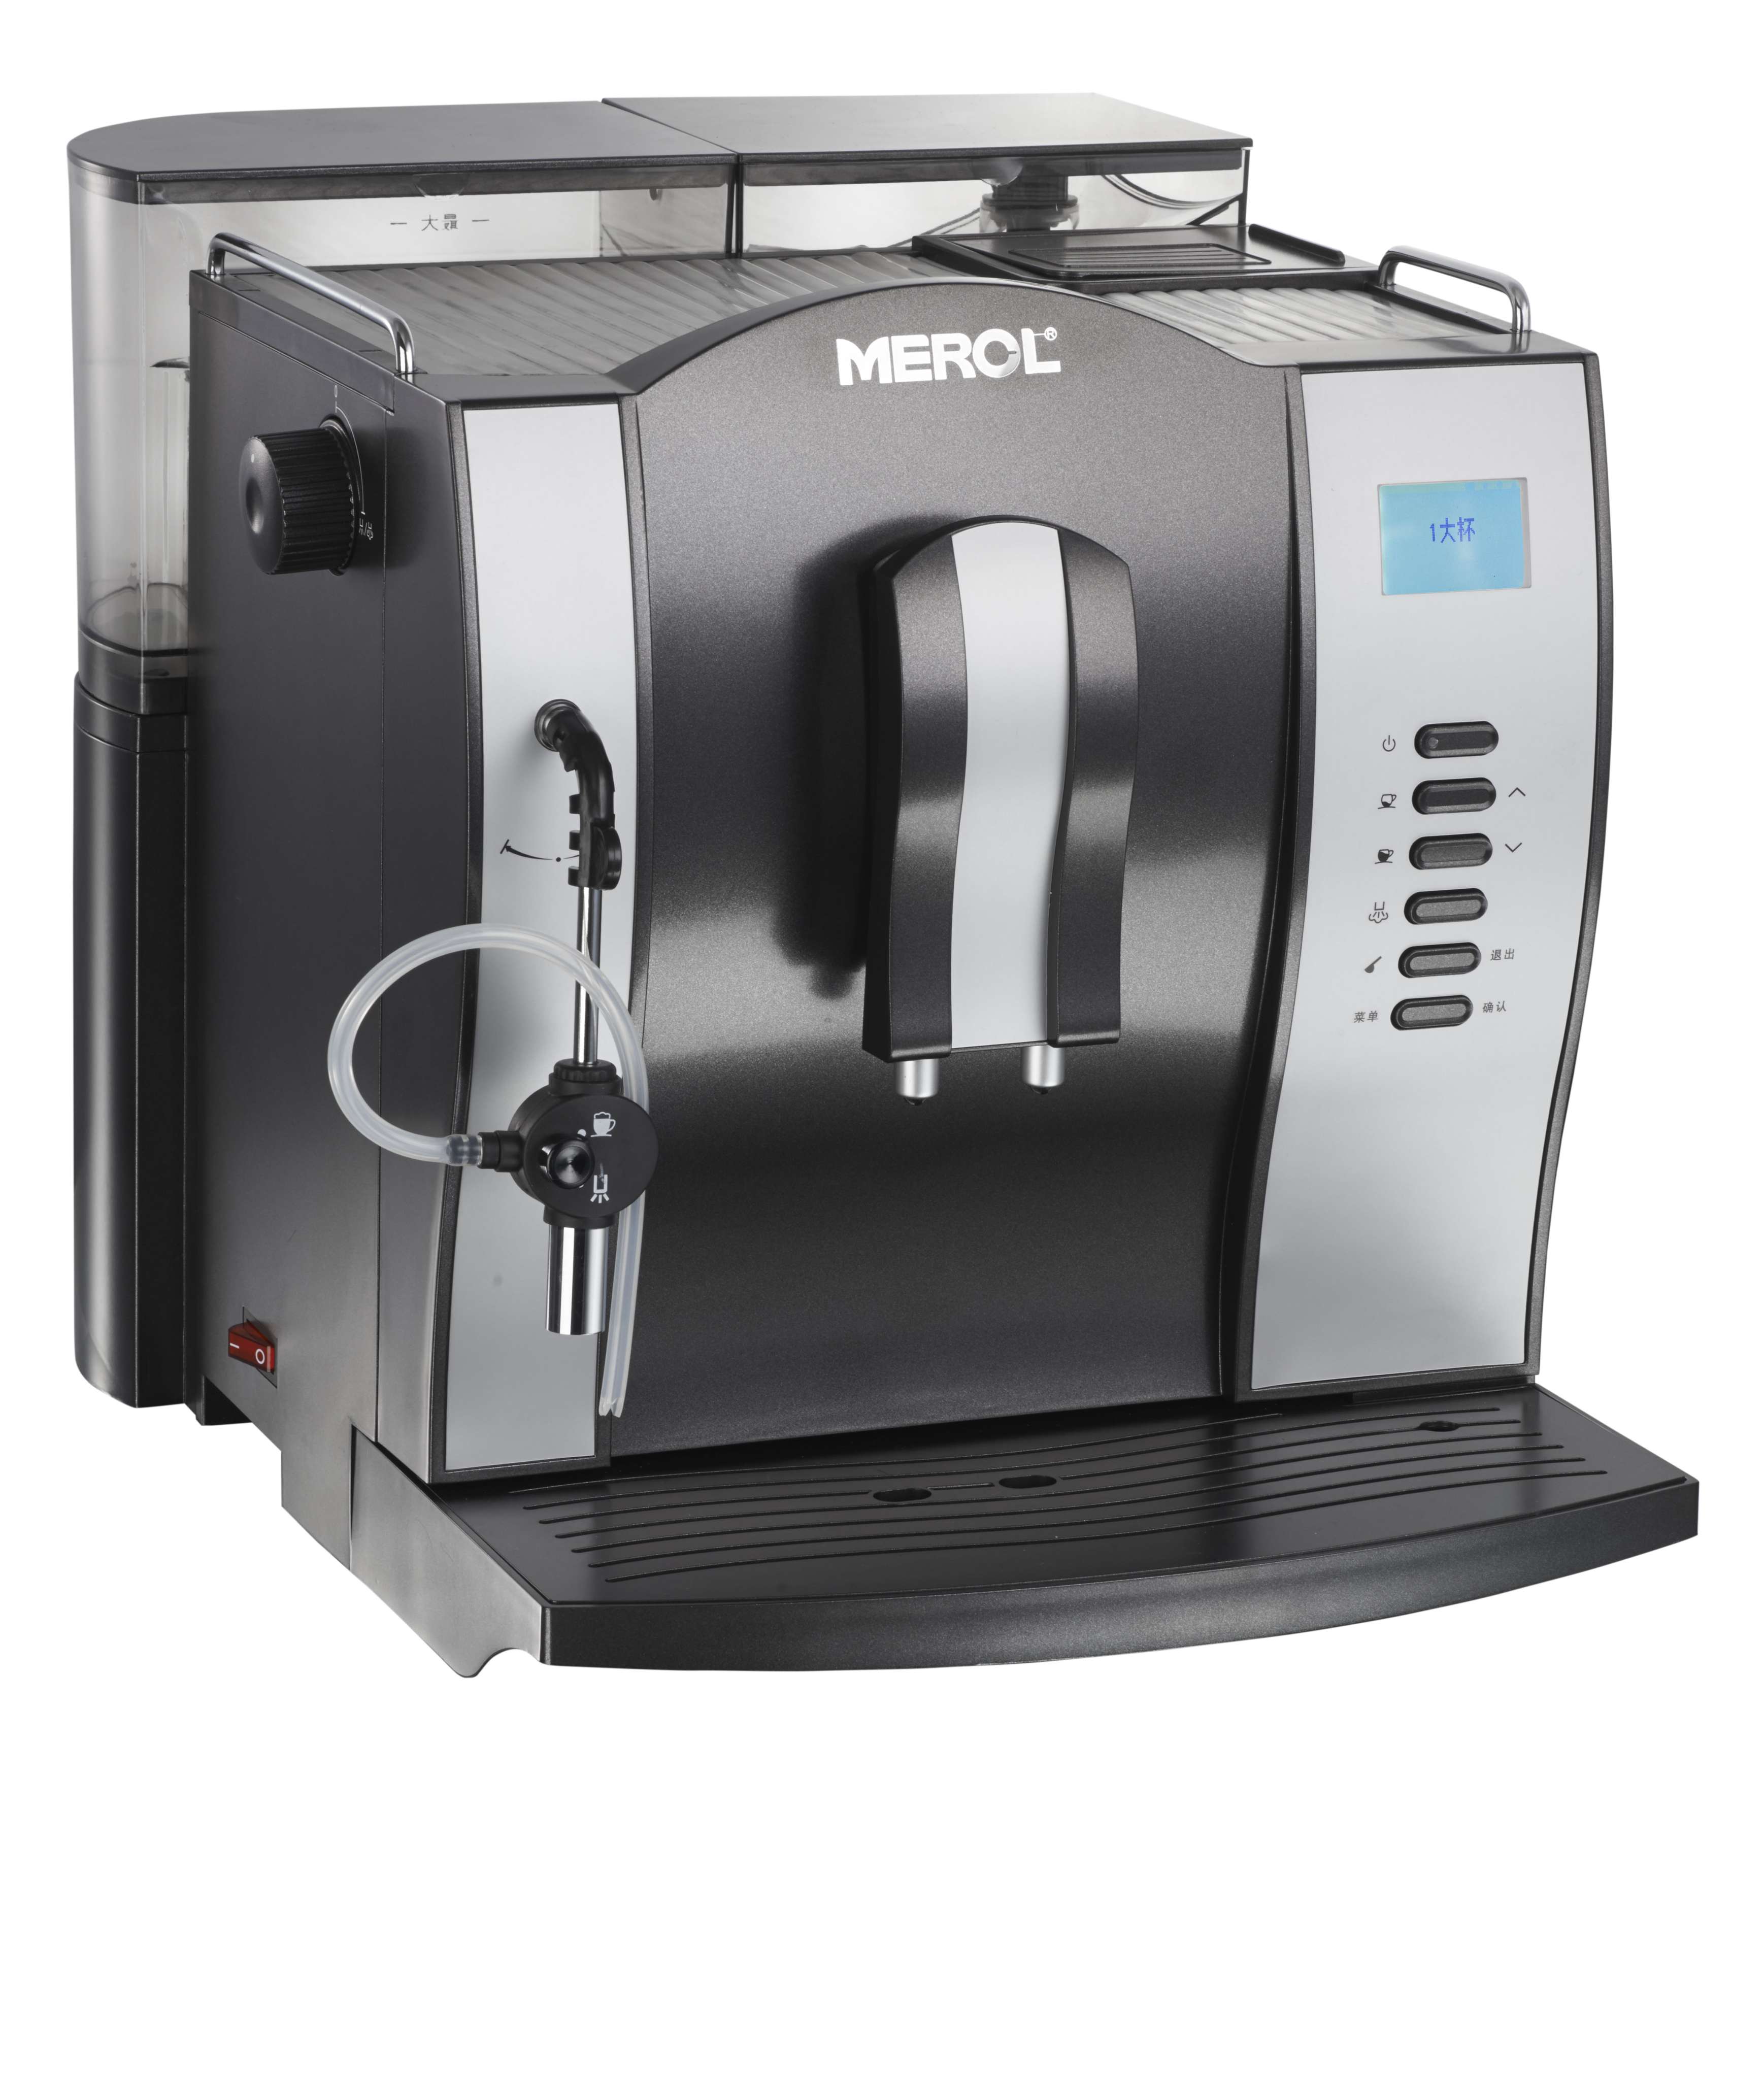 MEROL ME-708美侬美宜侬 意式全自动咖啡机